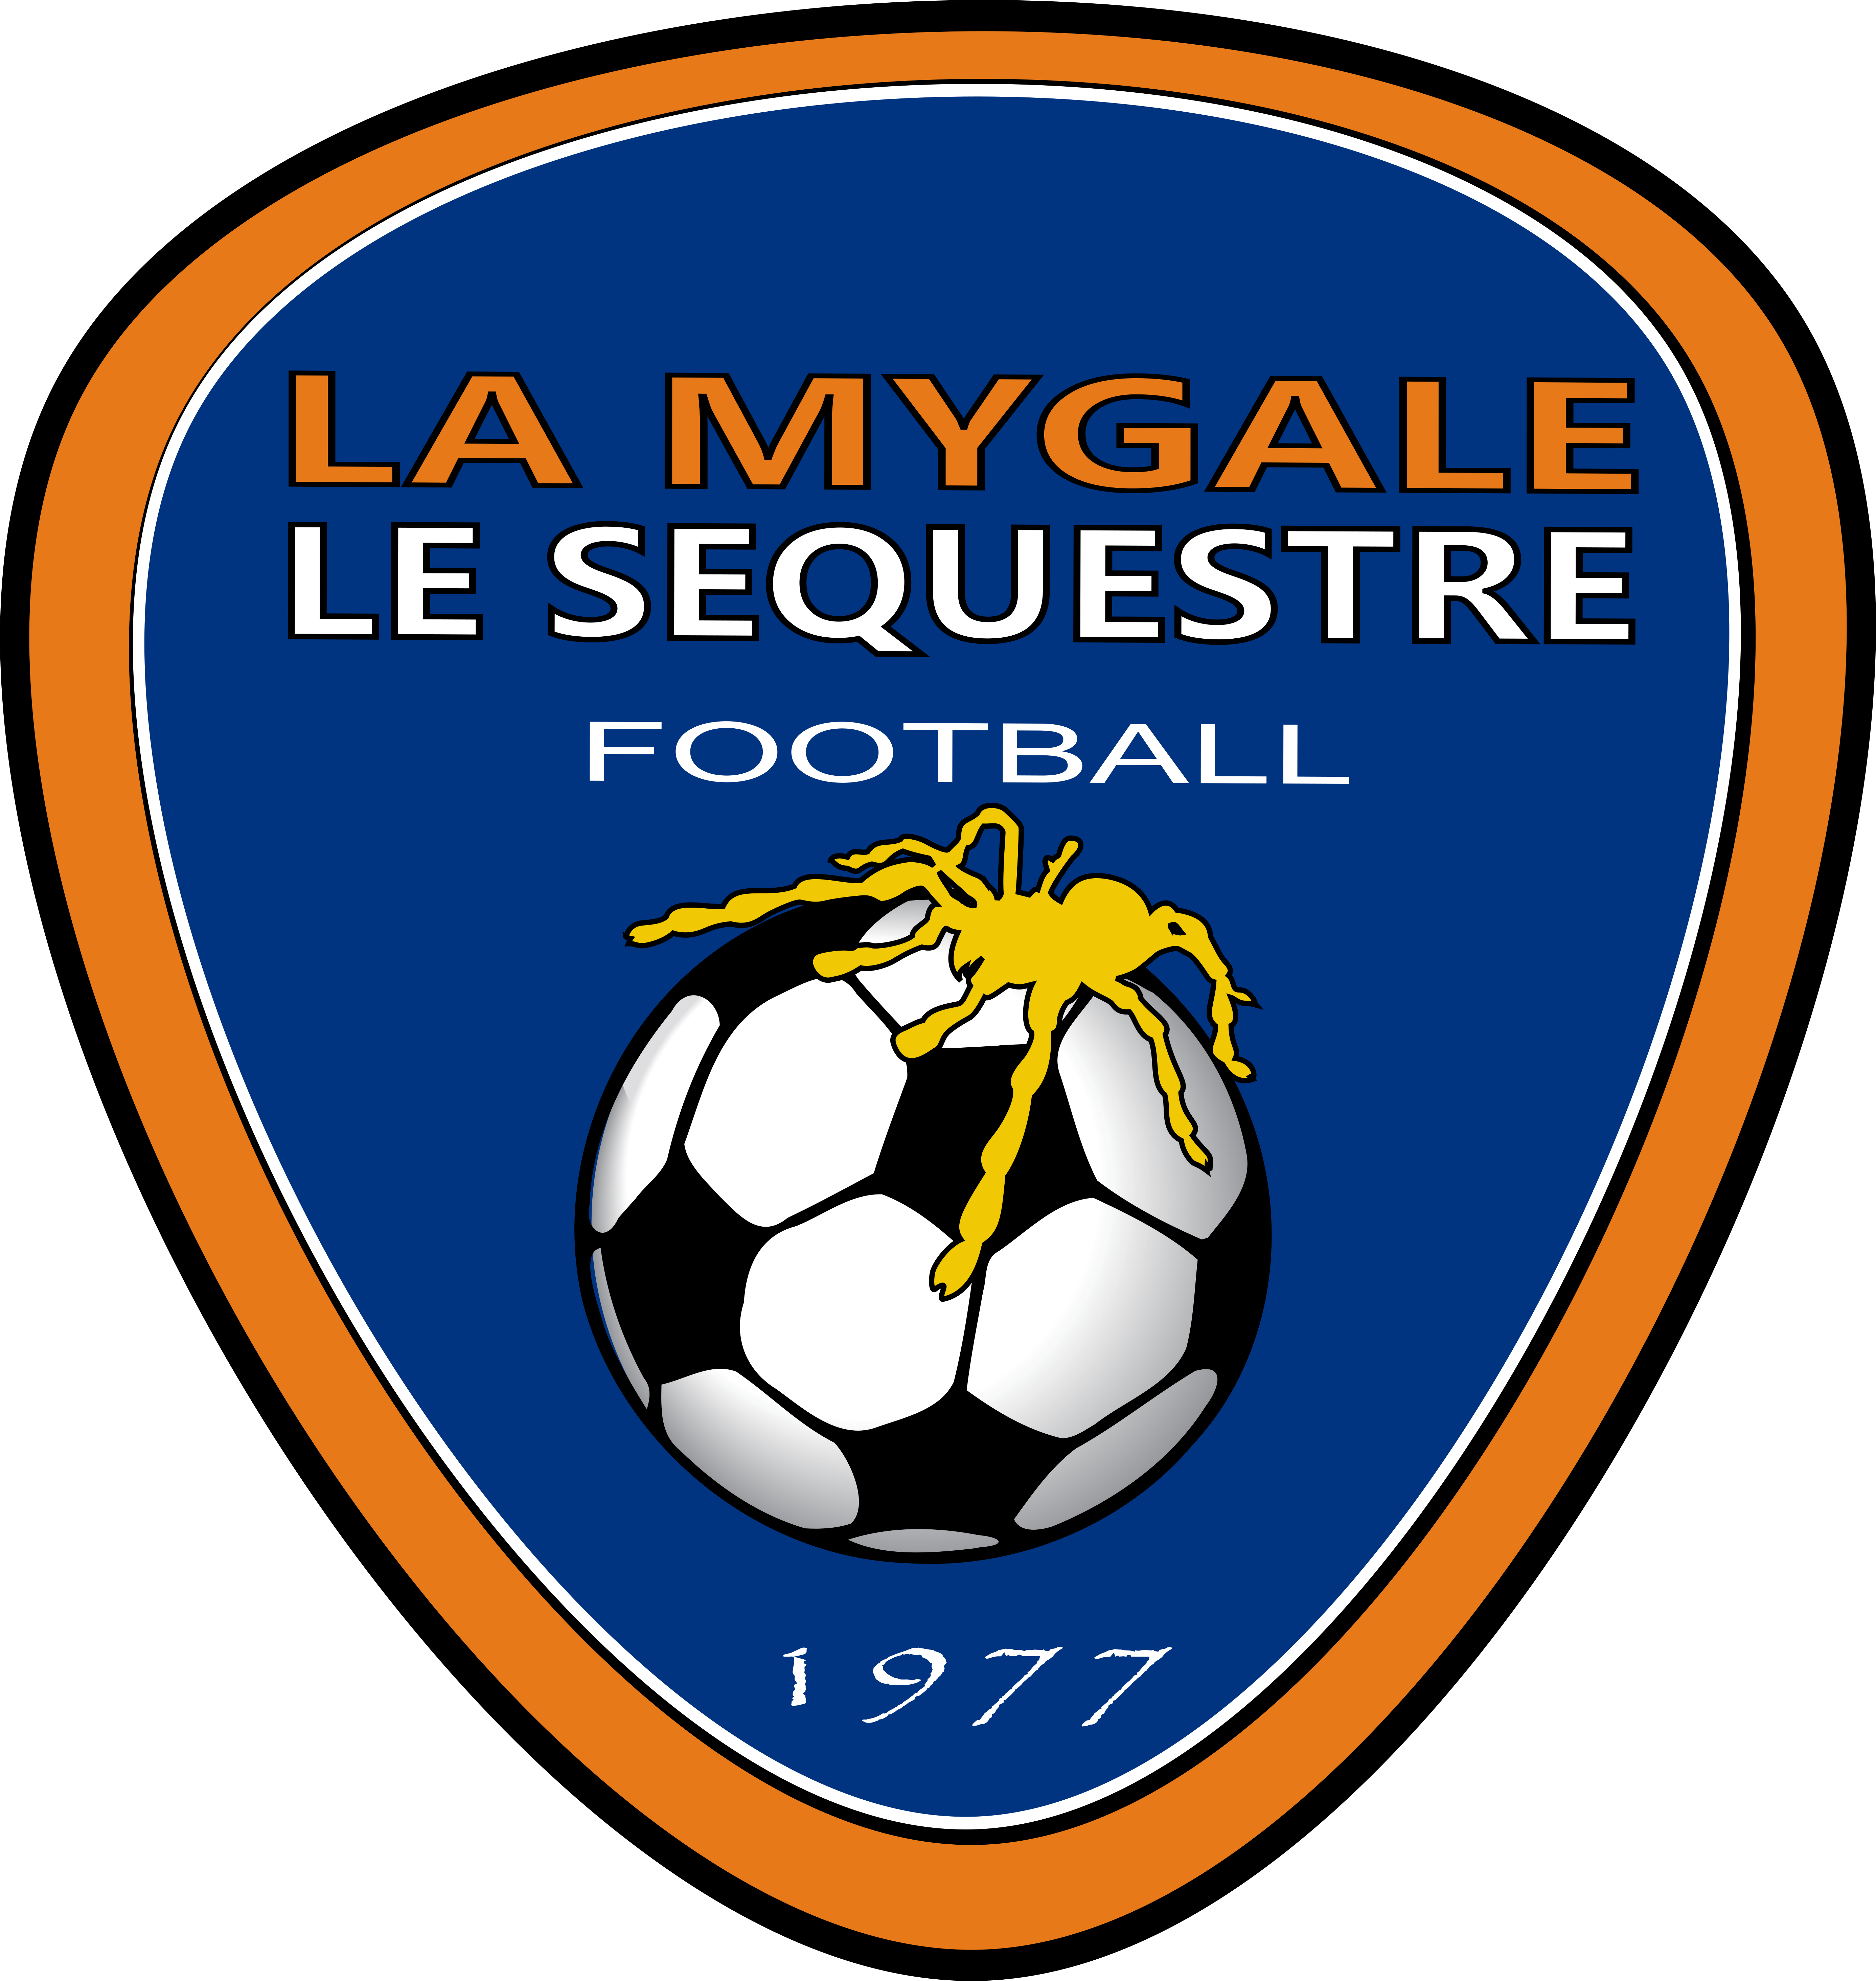 LA MYGALE SEQUESTRE FOOTBALL Logo